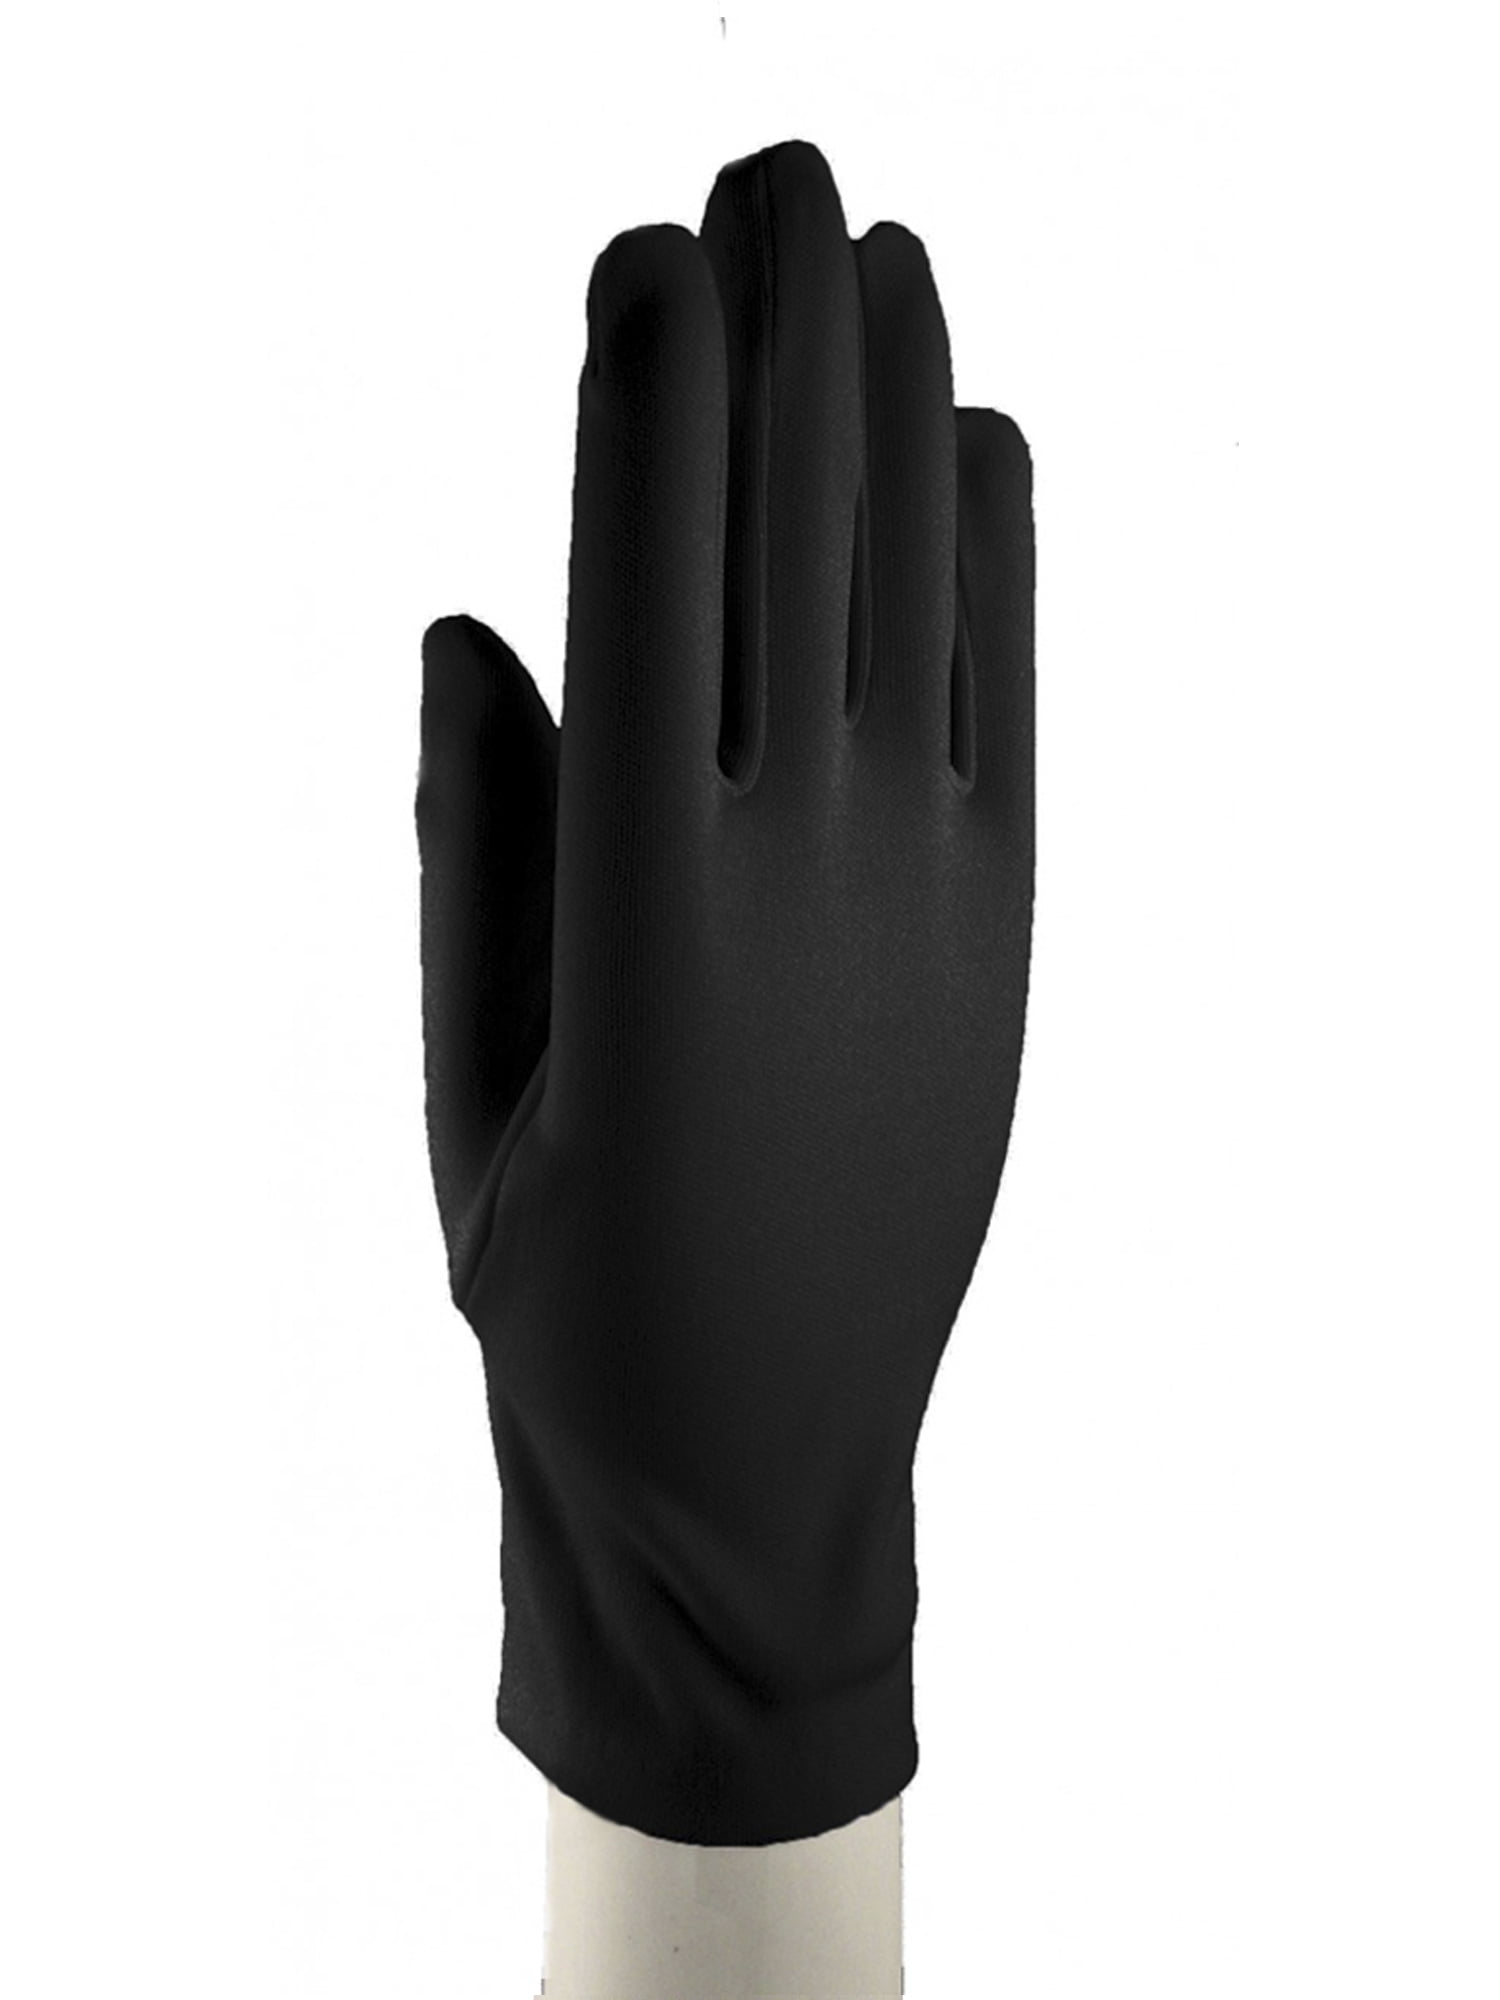 Black Dress Gloves Wrist Length - Dress Up, Church, Formal - Walmart.com